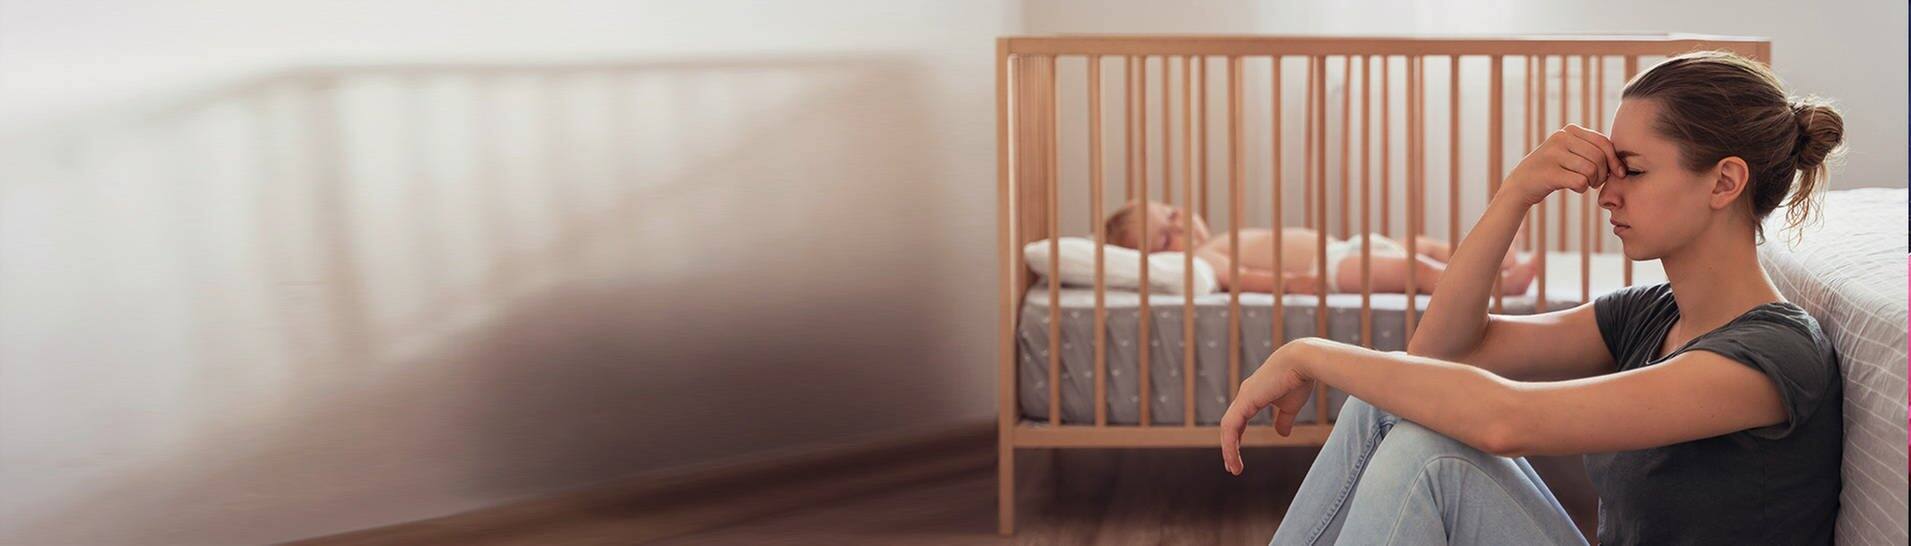 Frau mit Wochenbettdepression sitzt am Boden neben ihrem Baby (Foto: Adobe Stock, Arsenii)